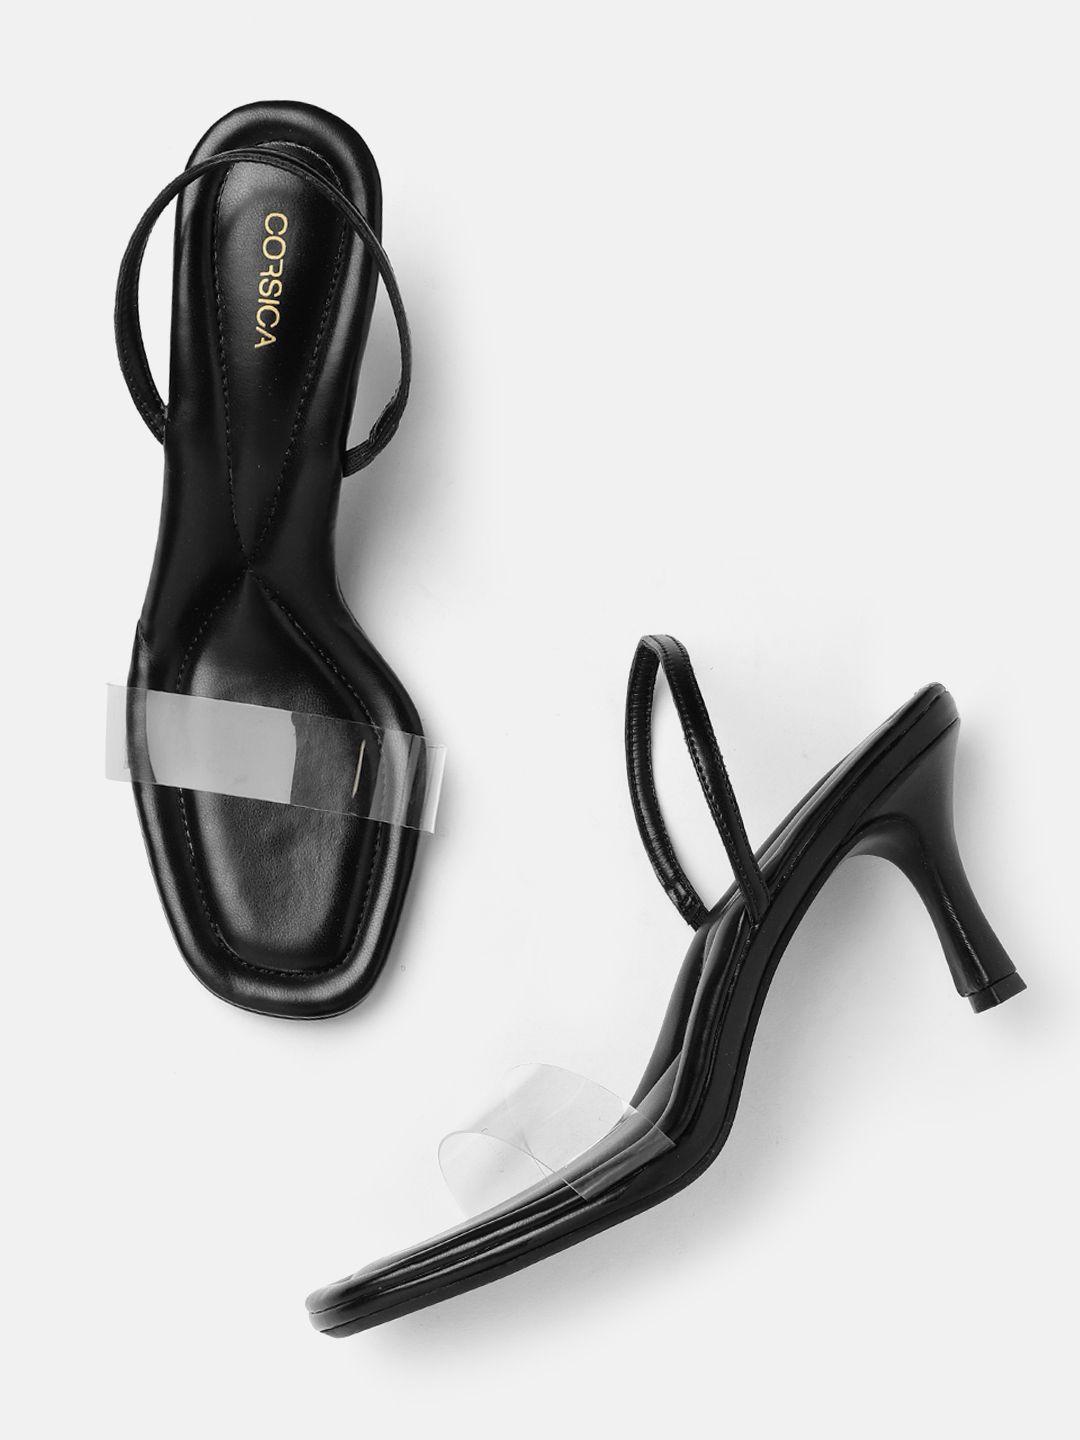 corsica-slim-heels